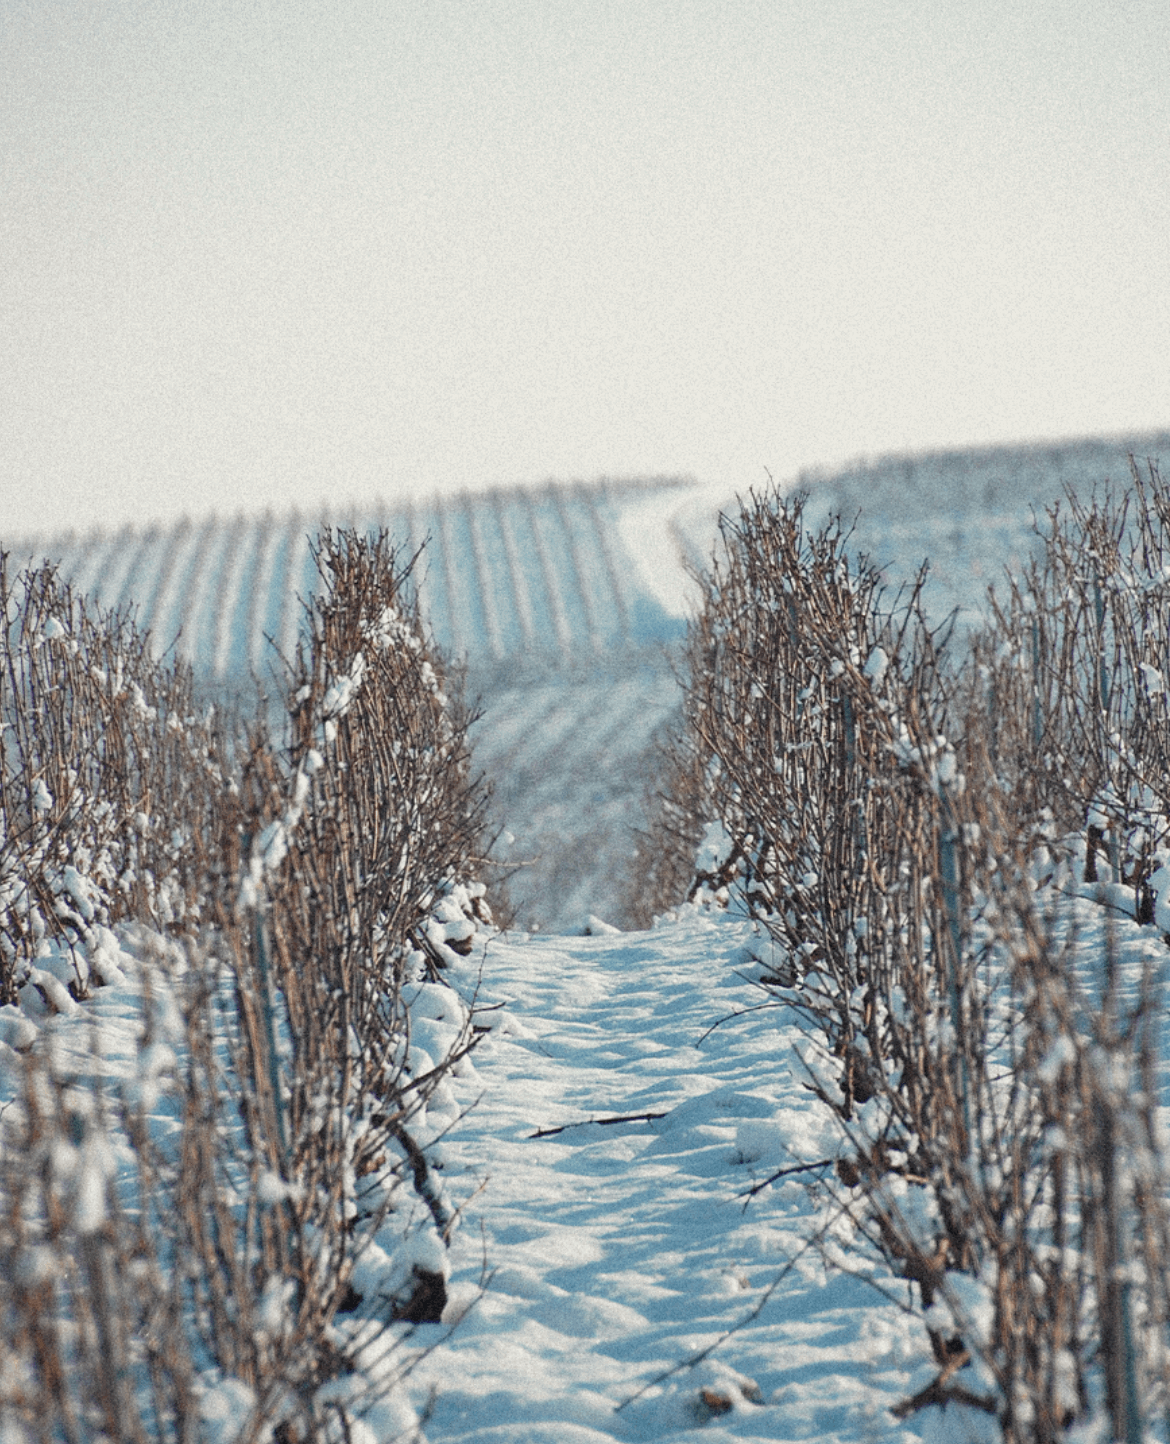 Moët & Chandon's vineyard in winter